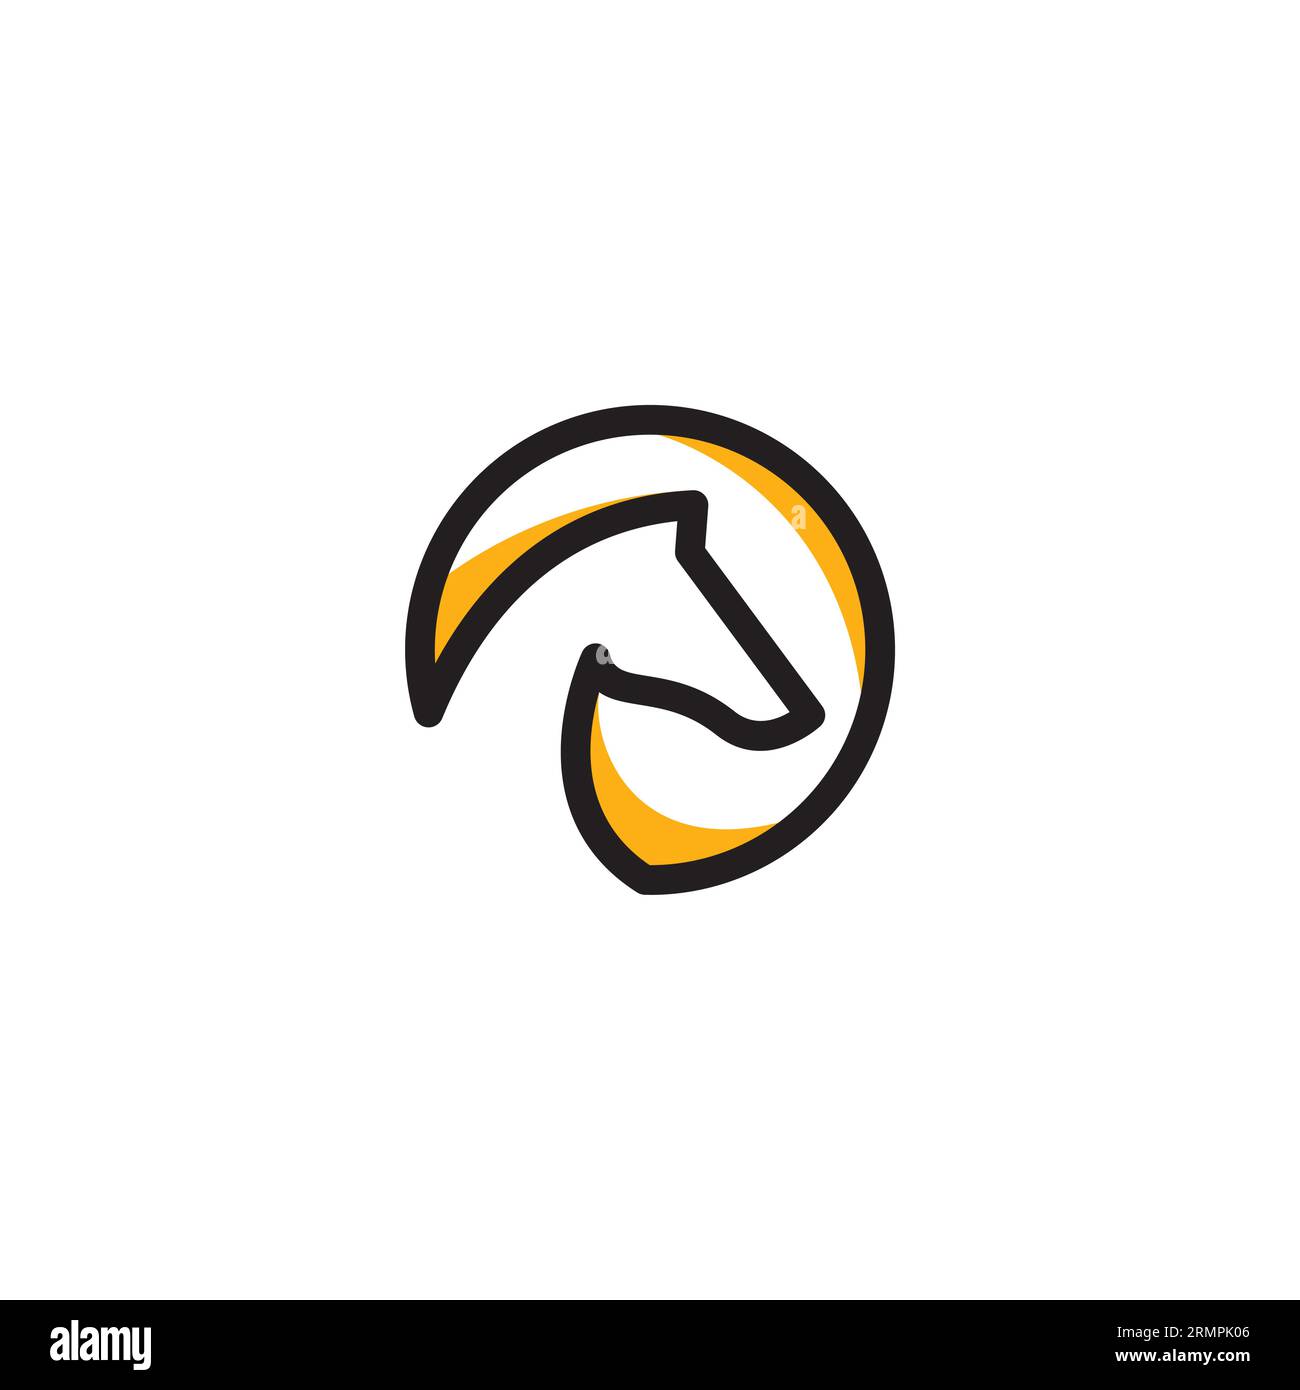 Horse Vector linear icons and logo design elements - horse logo design Stock Vector